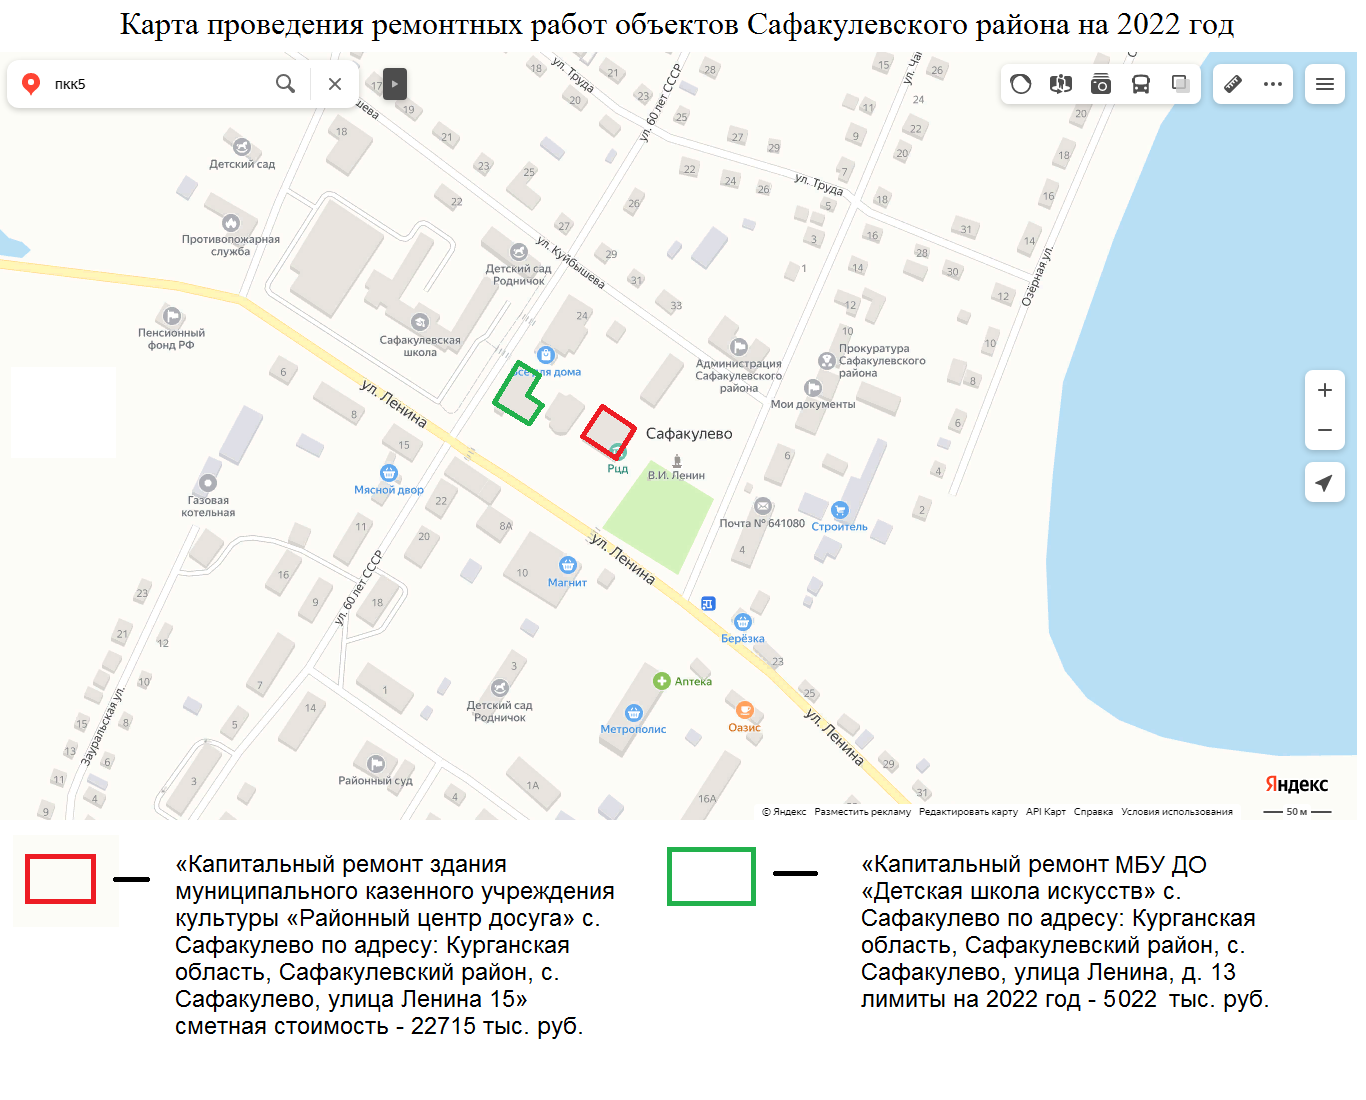 Карта проведения ремонтных работ объектов Сафакулевского района на 2022 год.